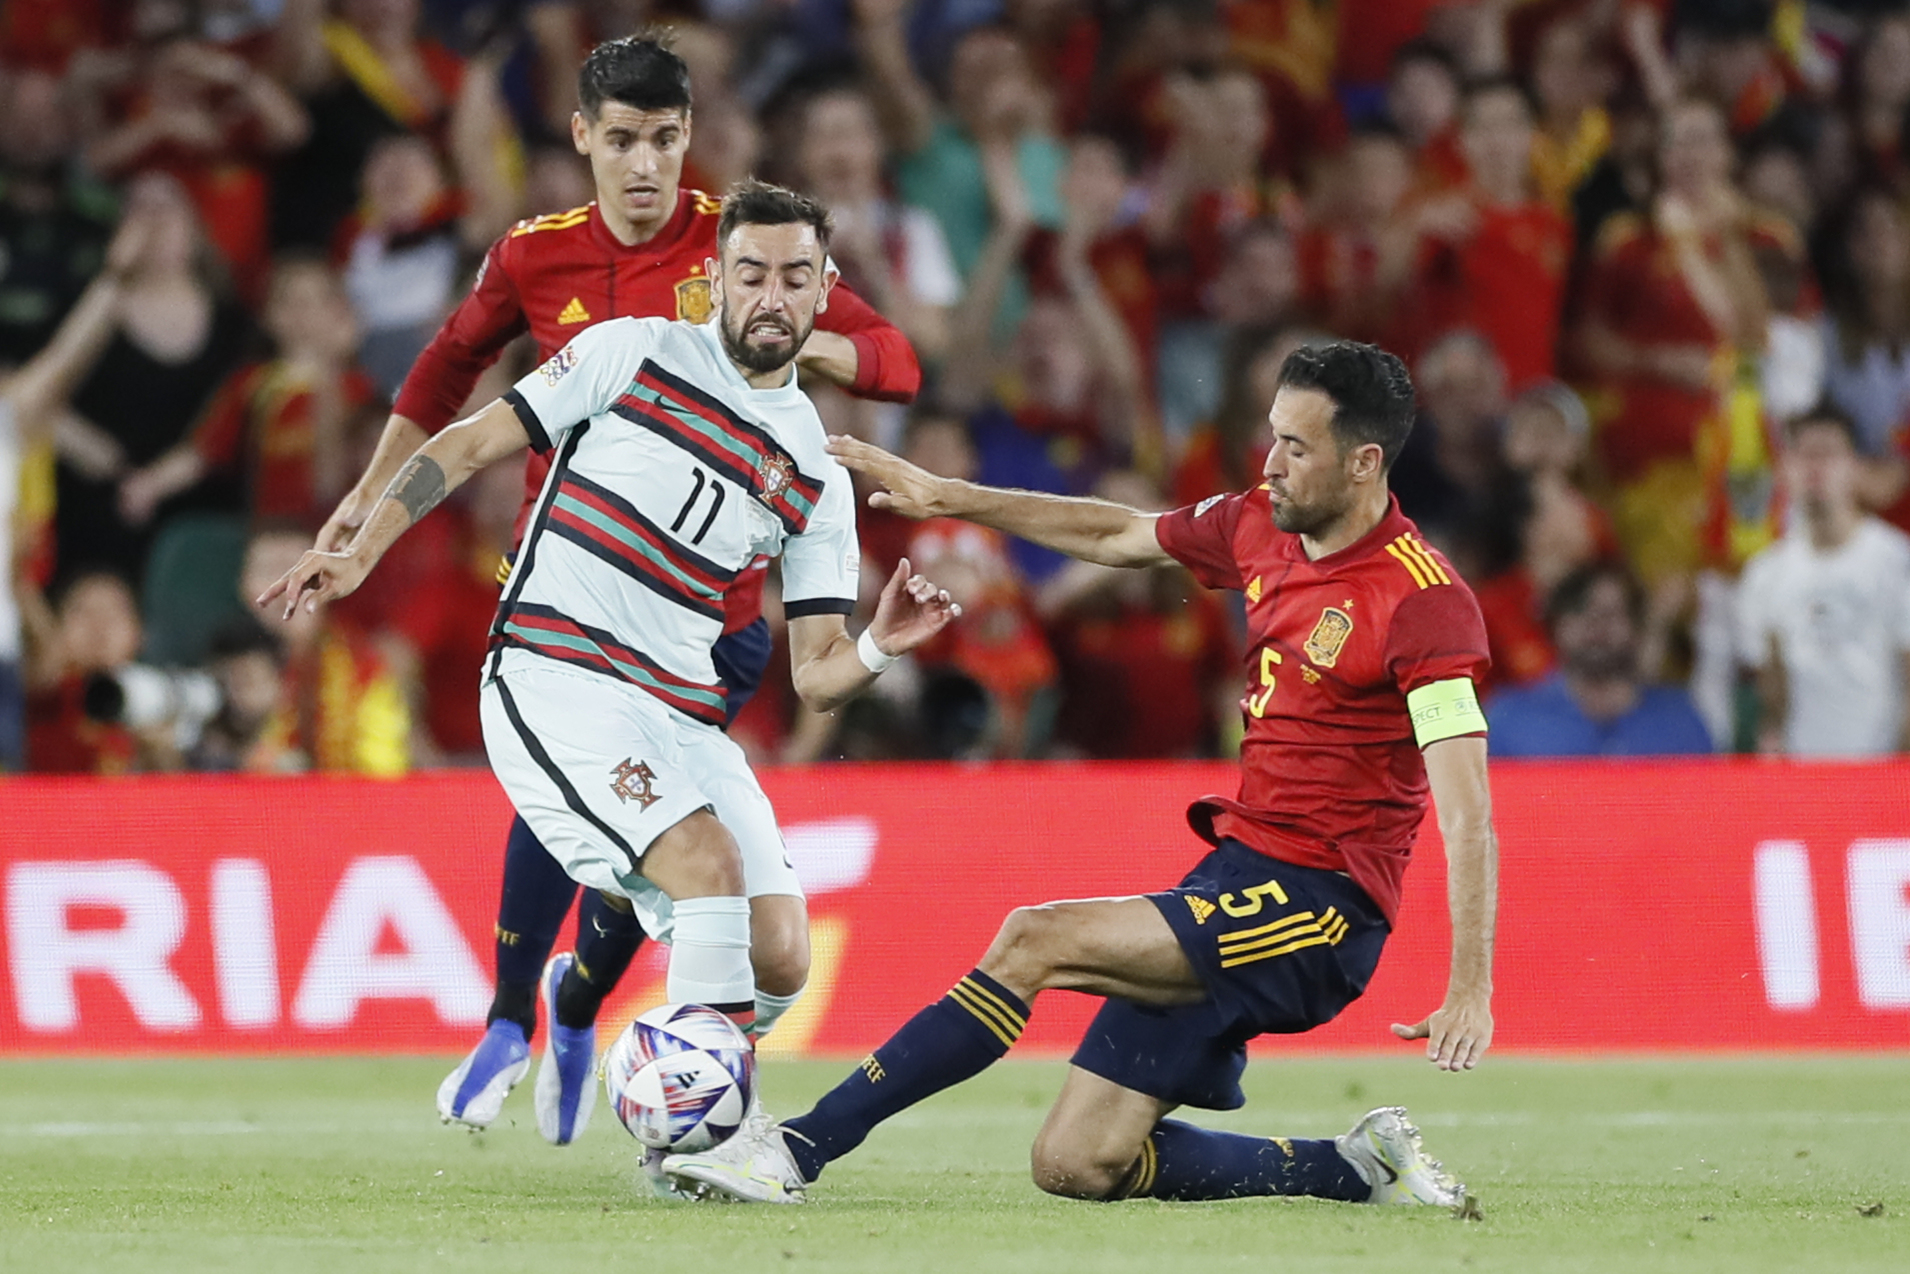 España tropieza ante Portugal en el estreno en la Liga de Naciones (1-1)